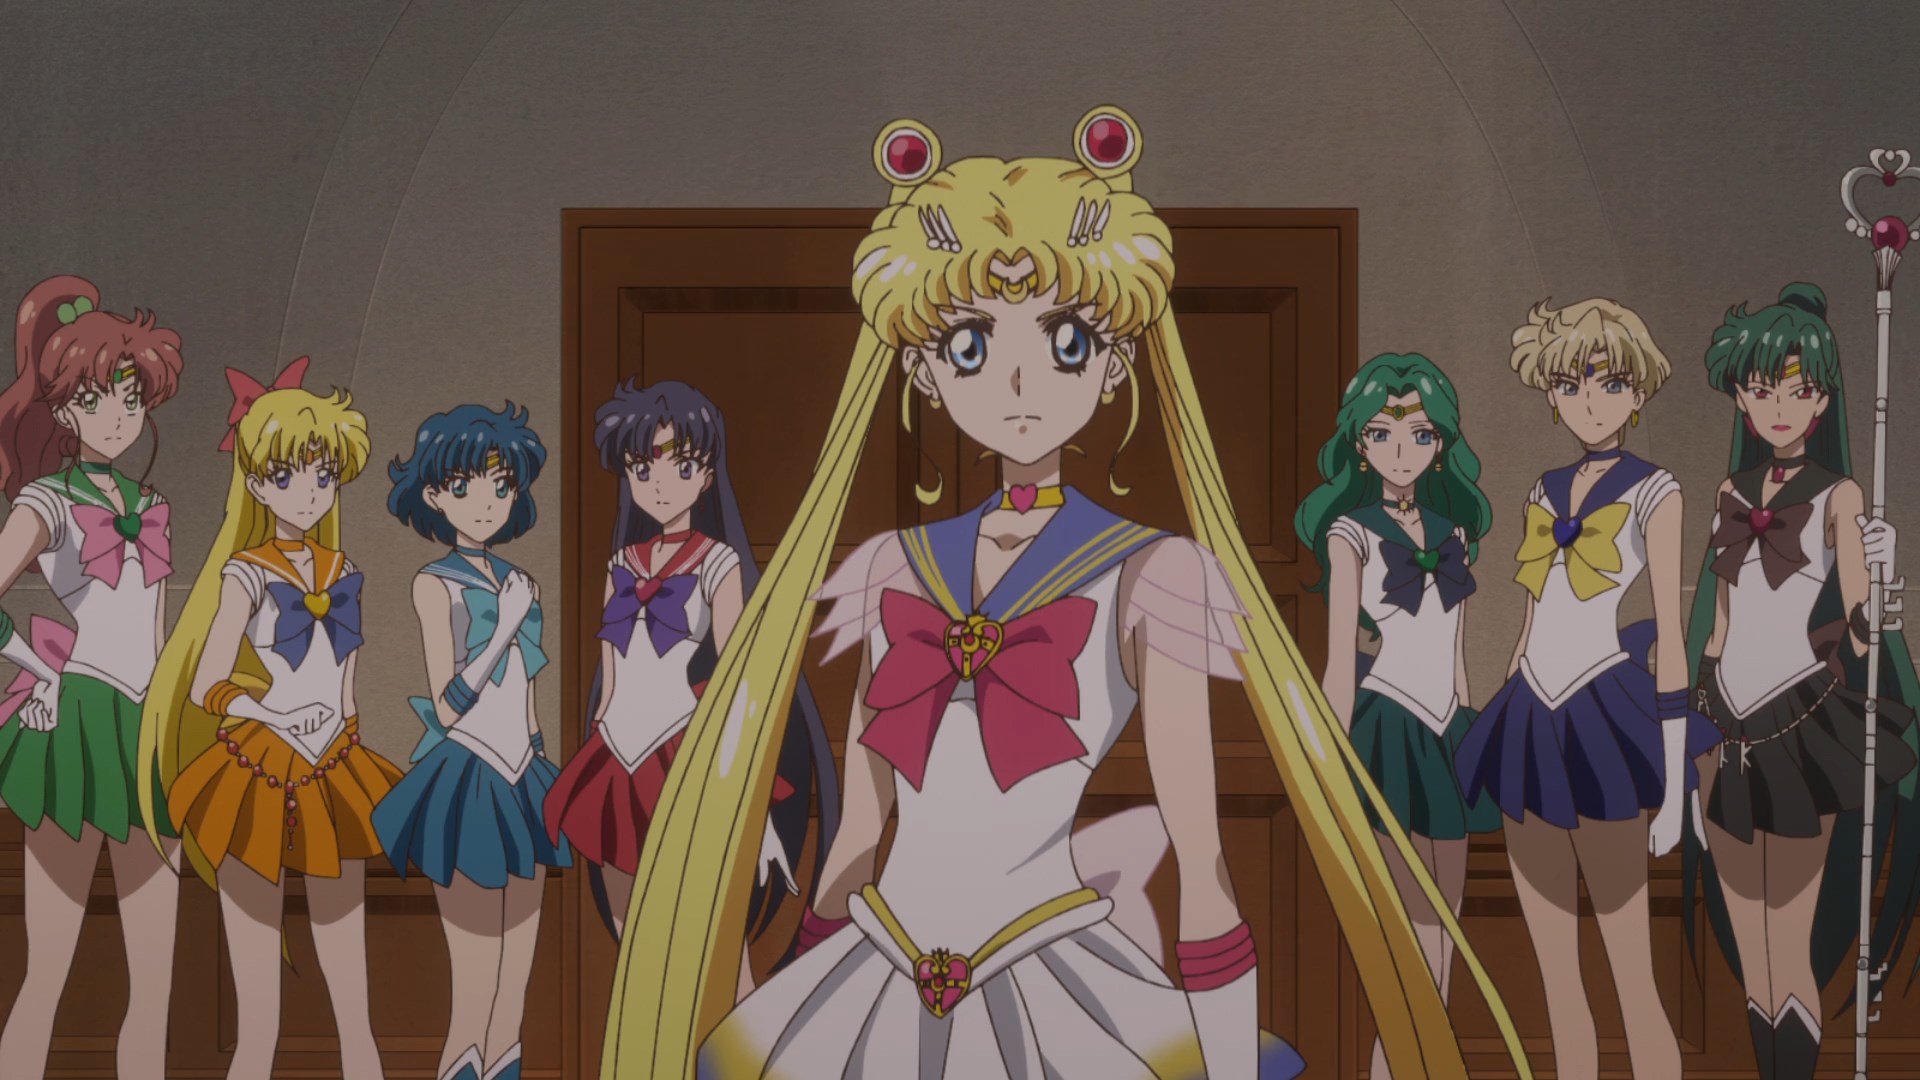 Sailor Moon Cosmos divulga abertura com música clássica do anime -  NerdBunker